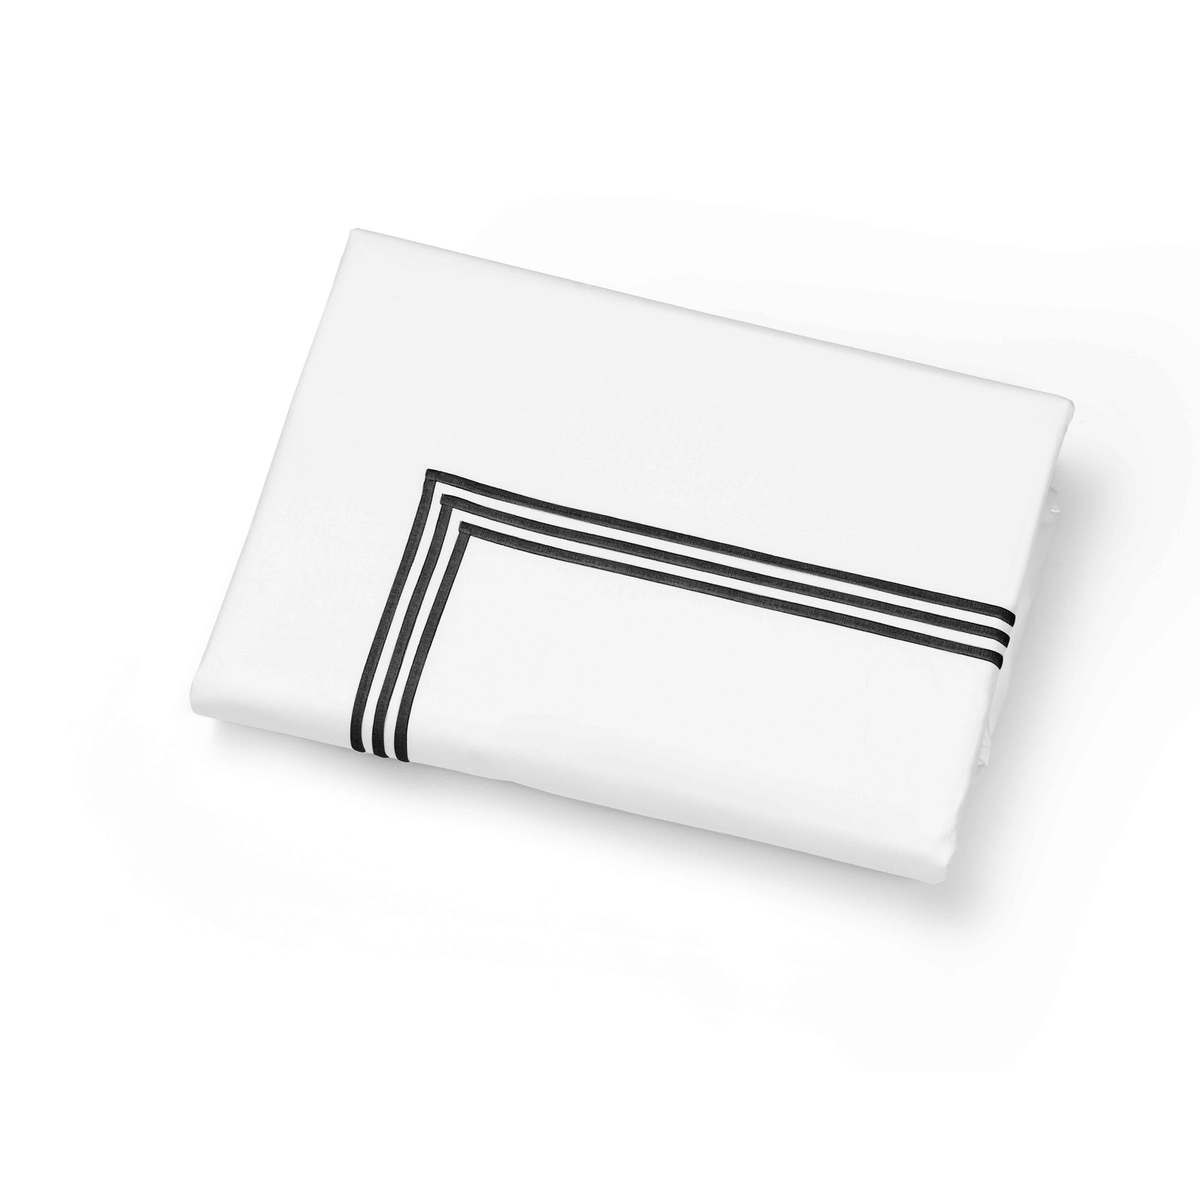 Folded Duvet Cover of Signoria Platinum Percale Bedding in White/Black Color